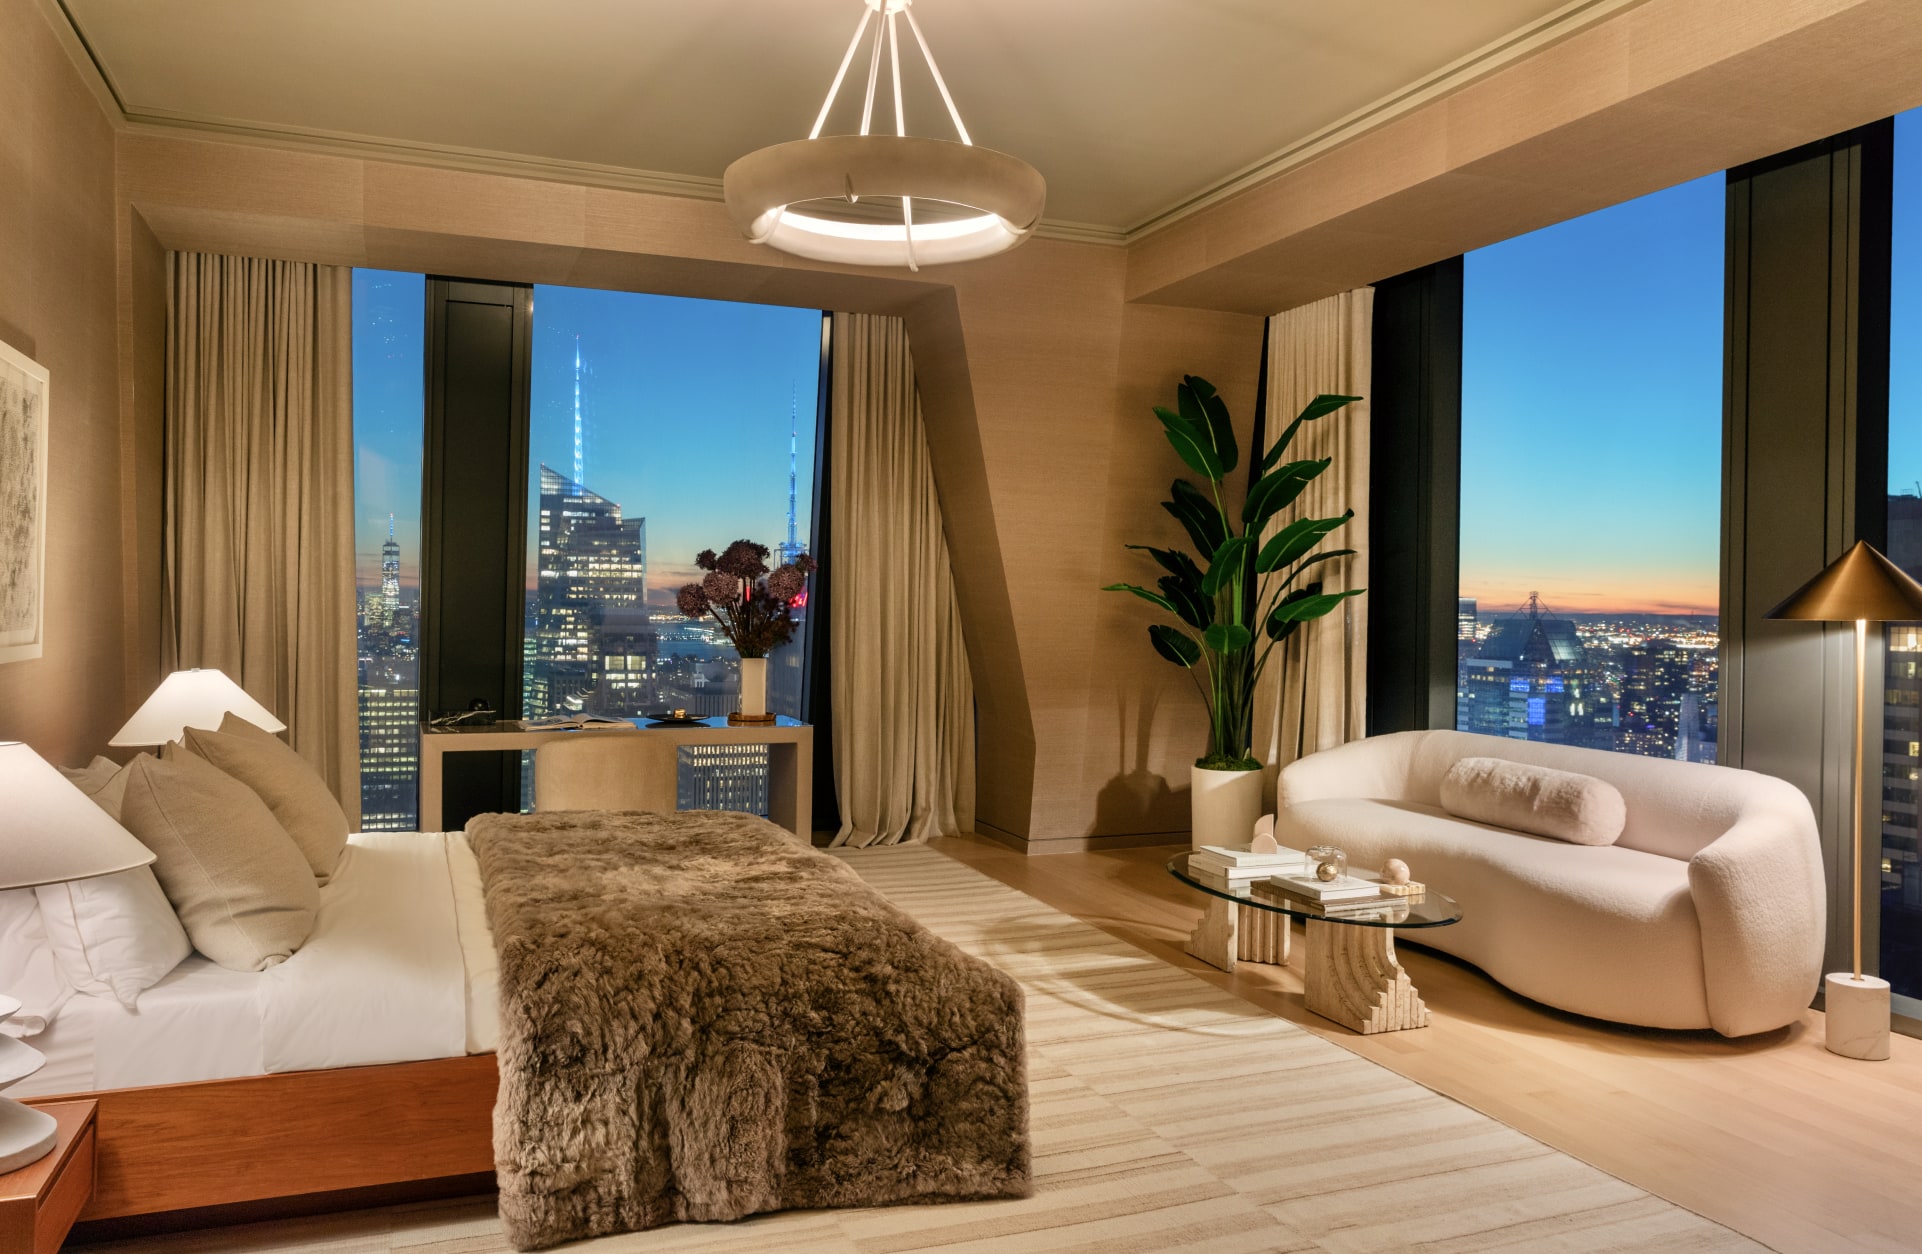 Bedroom in a Manhattan luxury condominium